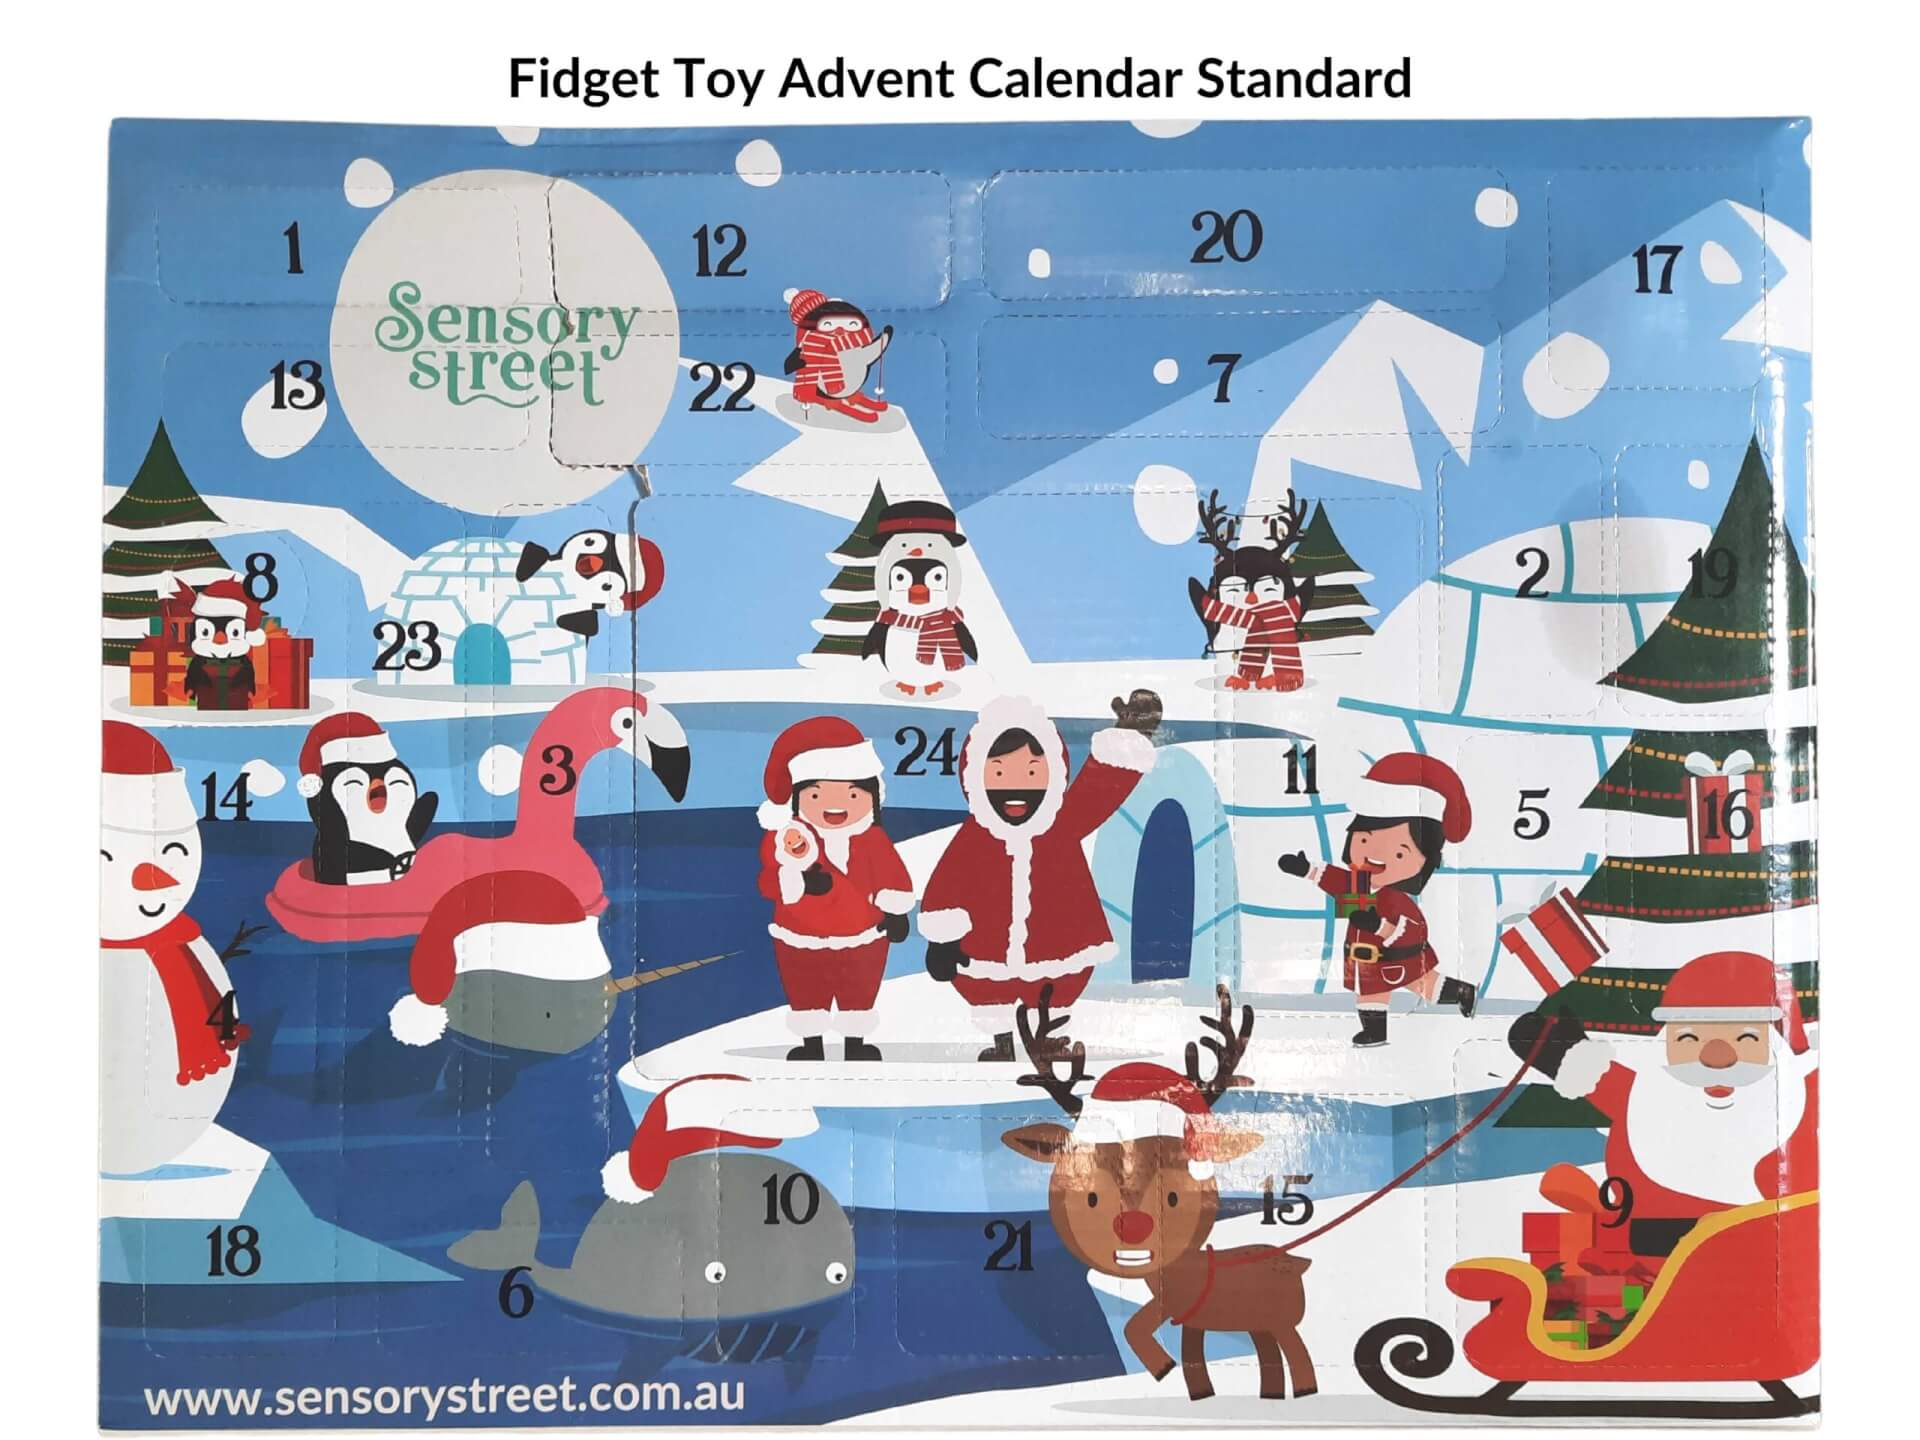 Fidget Toy Advent Calendar Standard